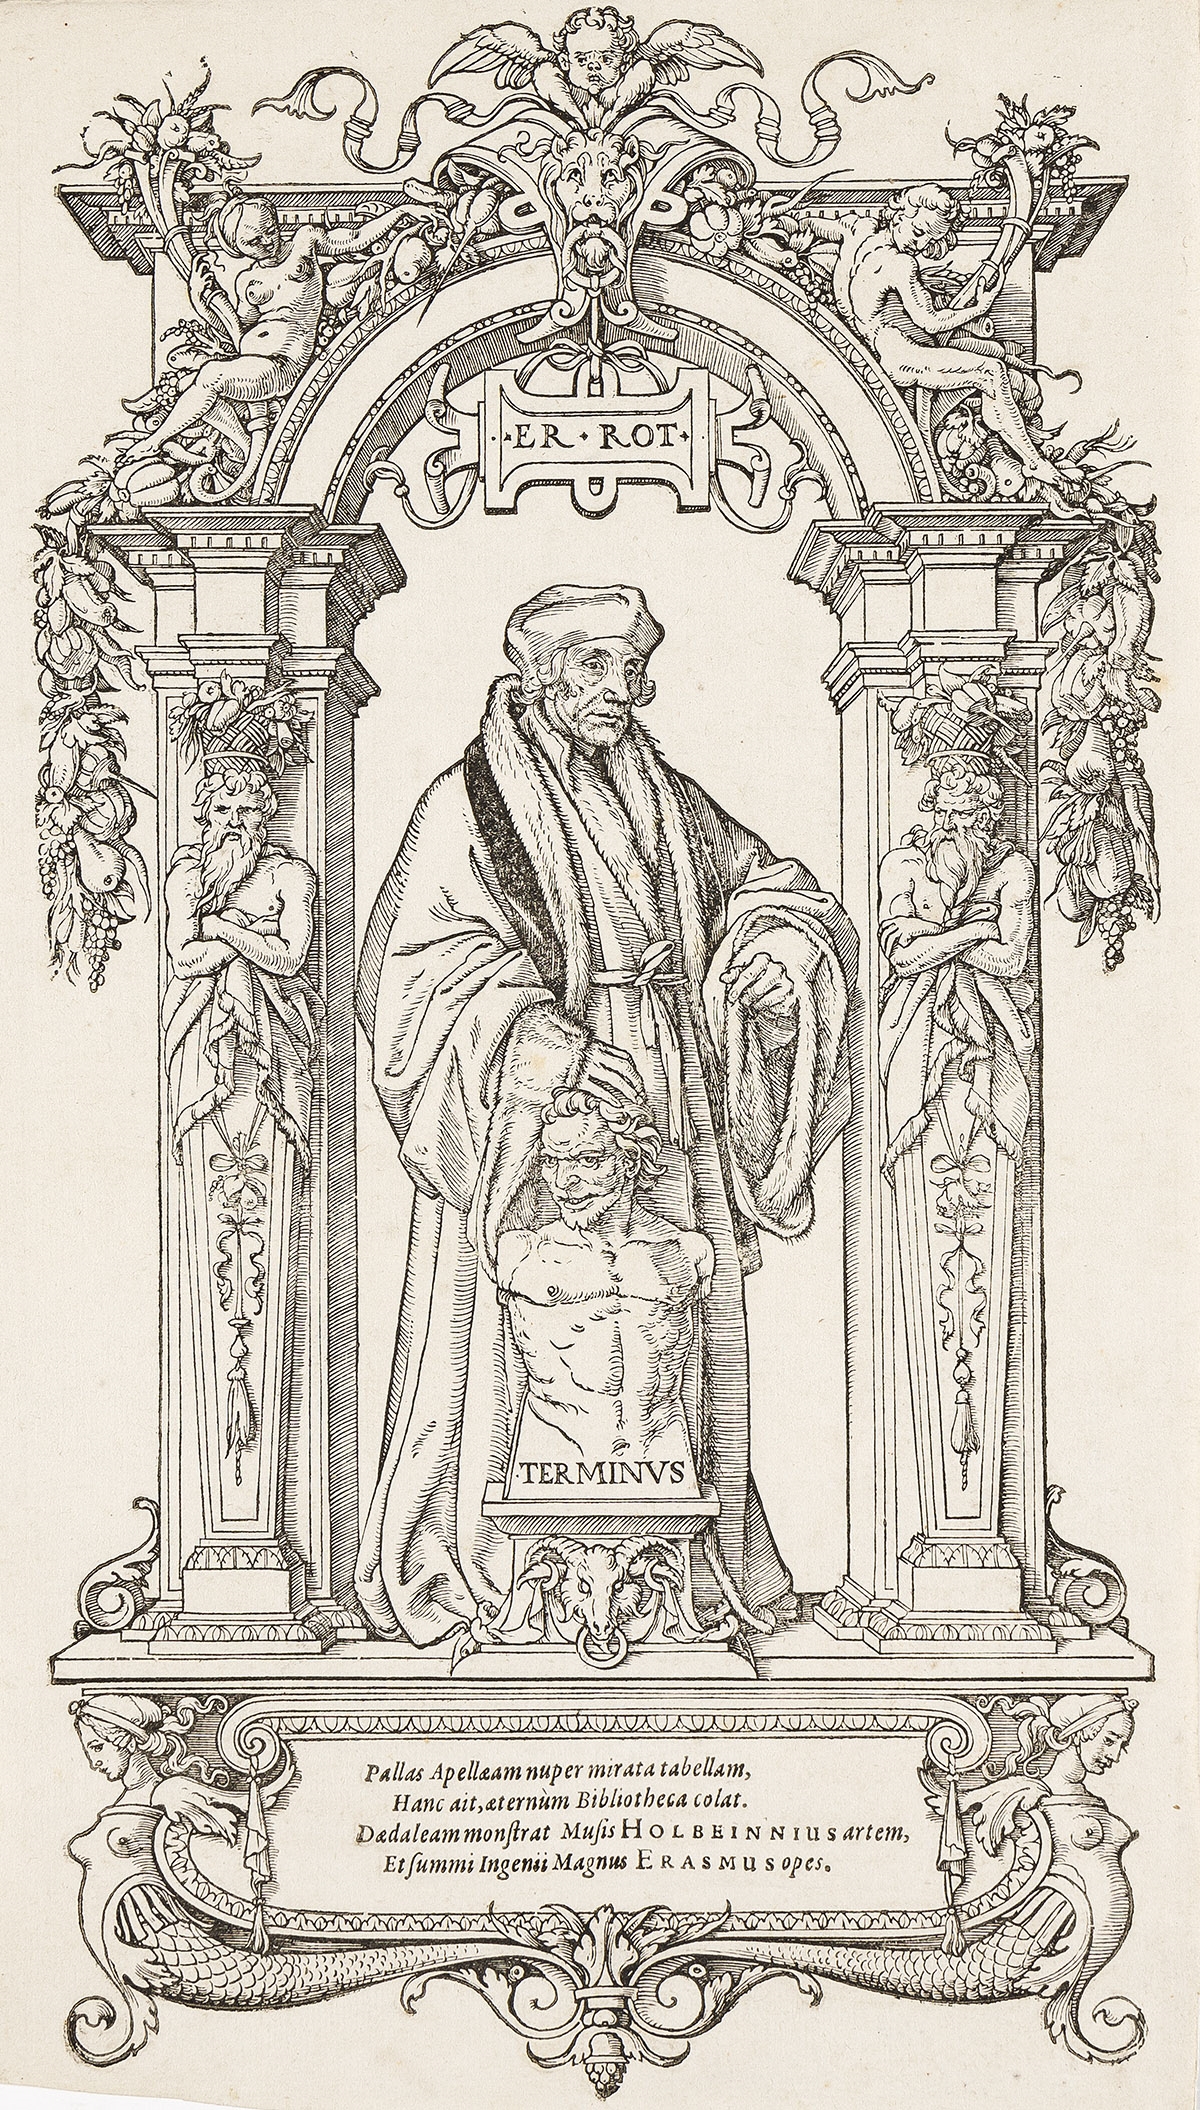 Erasmus of Rotterdam ("im Gehäus") - Hans Holbein the Younger